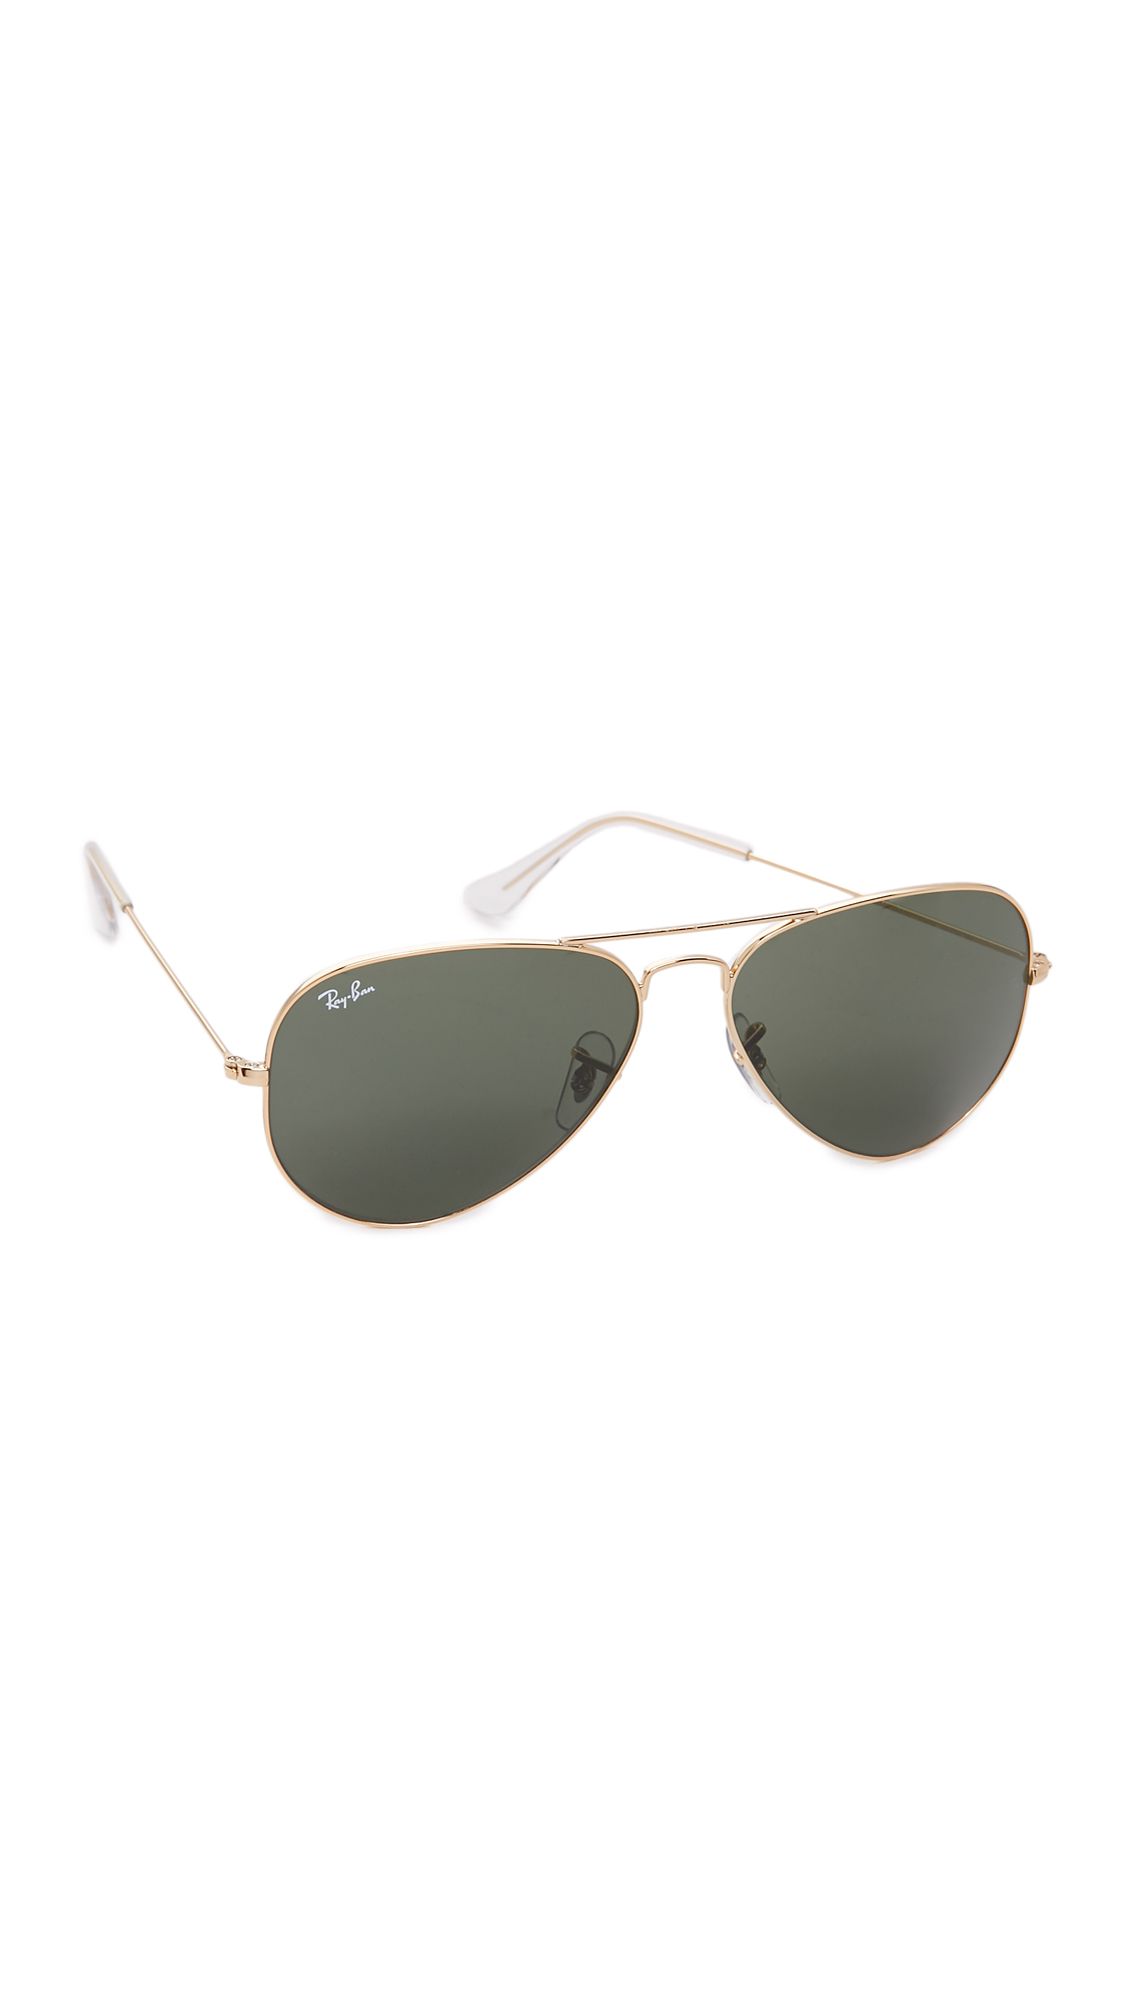 Original Aviator Sunglasses | Shopbop